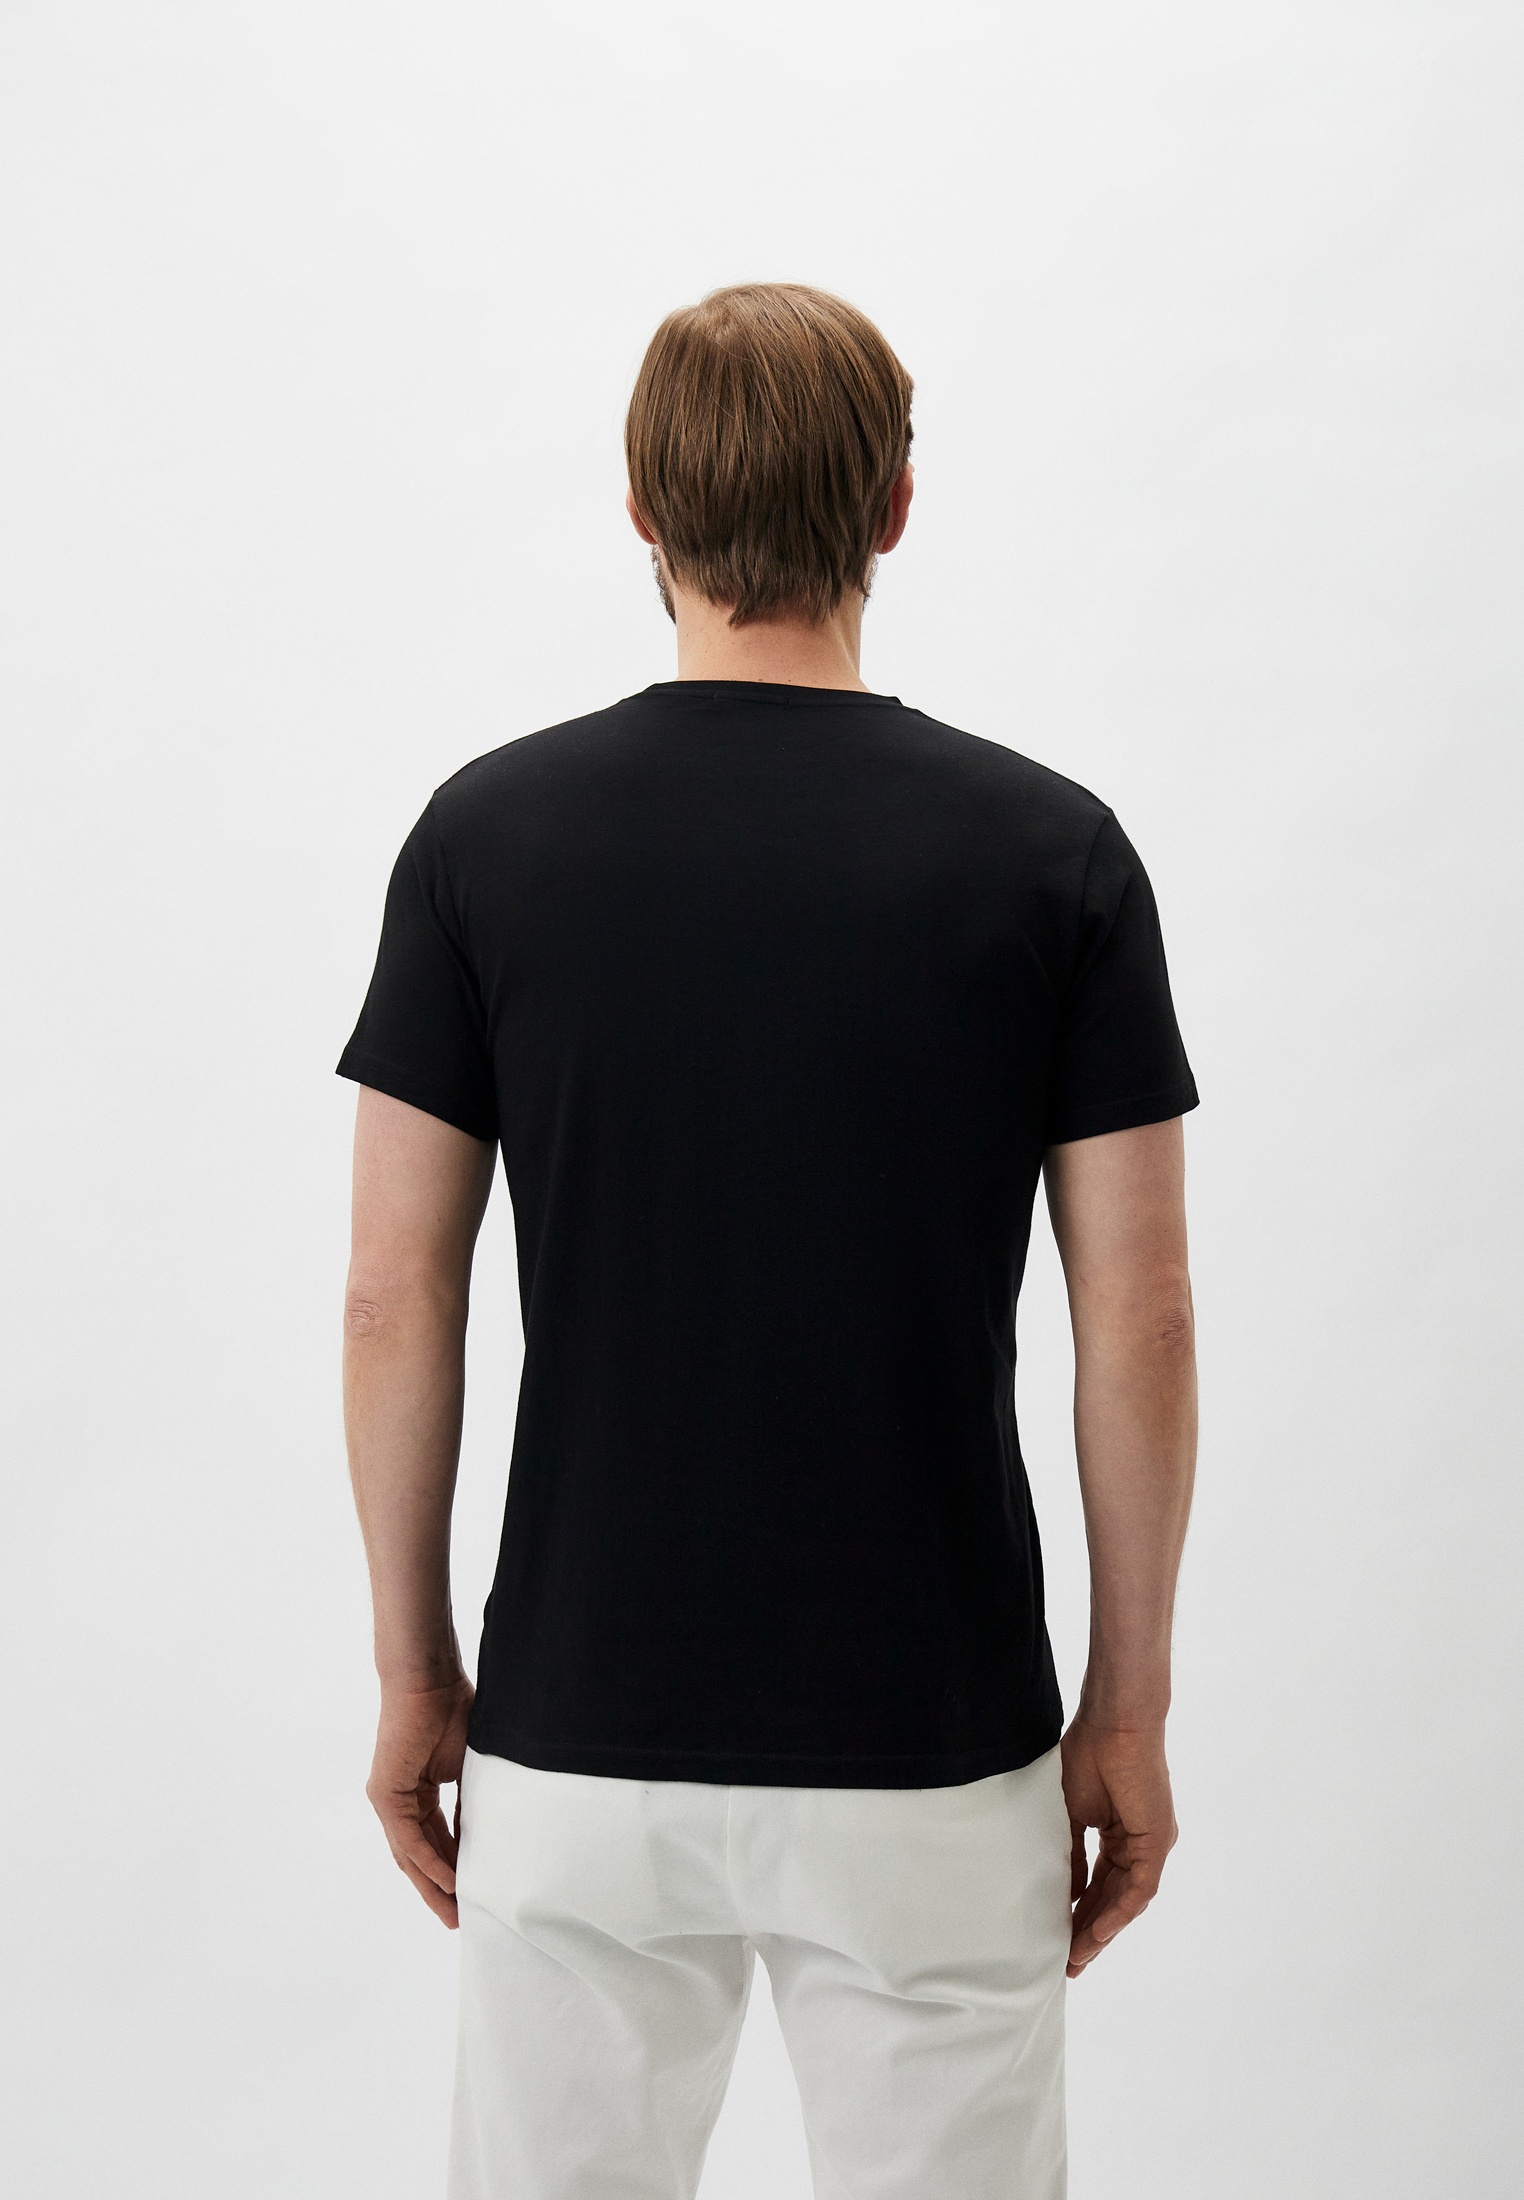 Мужская футболка Baldinini (Балдинини) B-OLM-M042: изображение 3